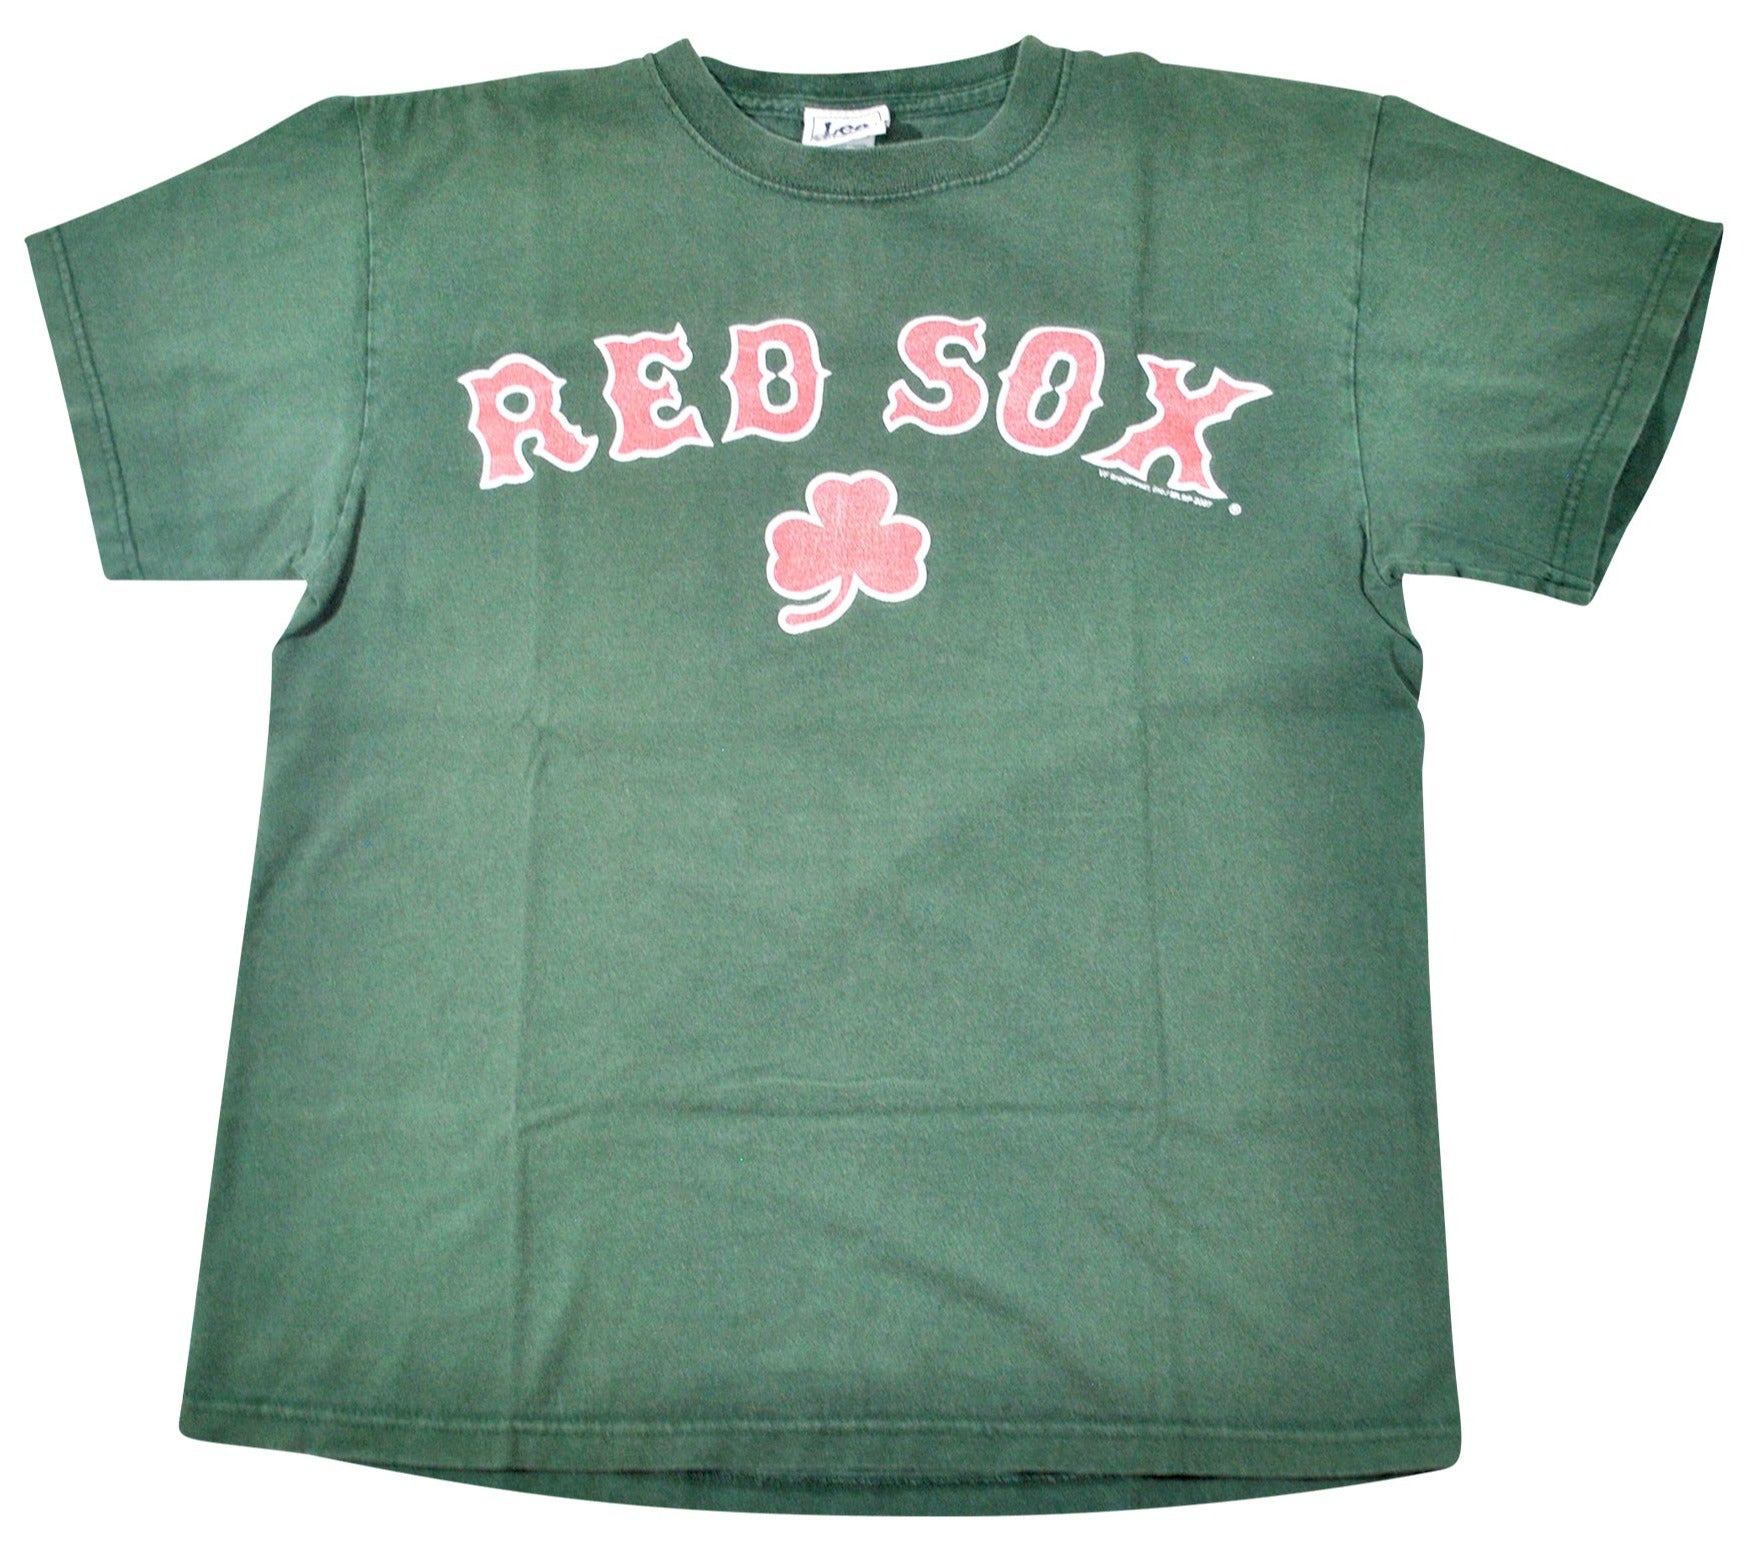 boston red sox tshirts